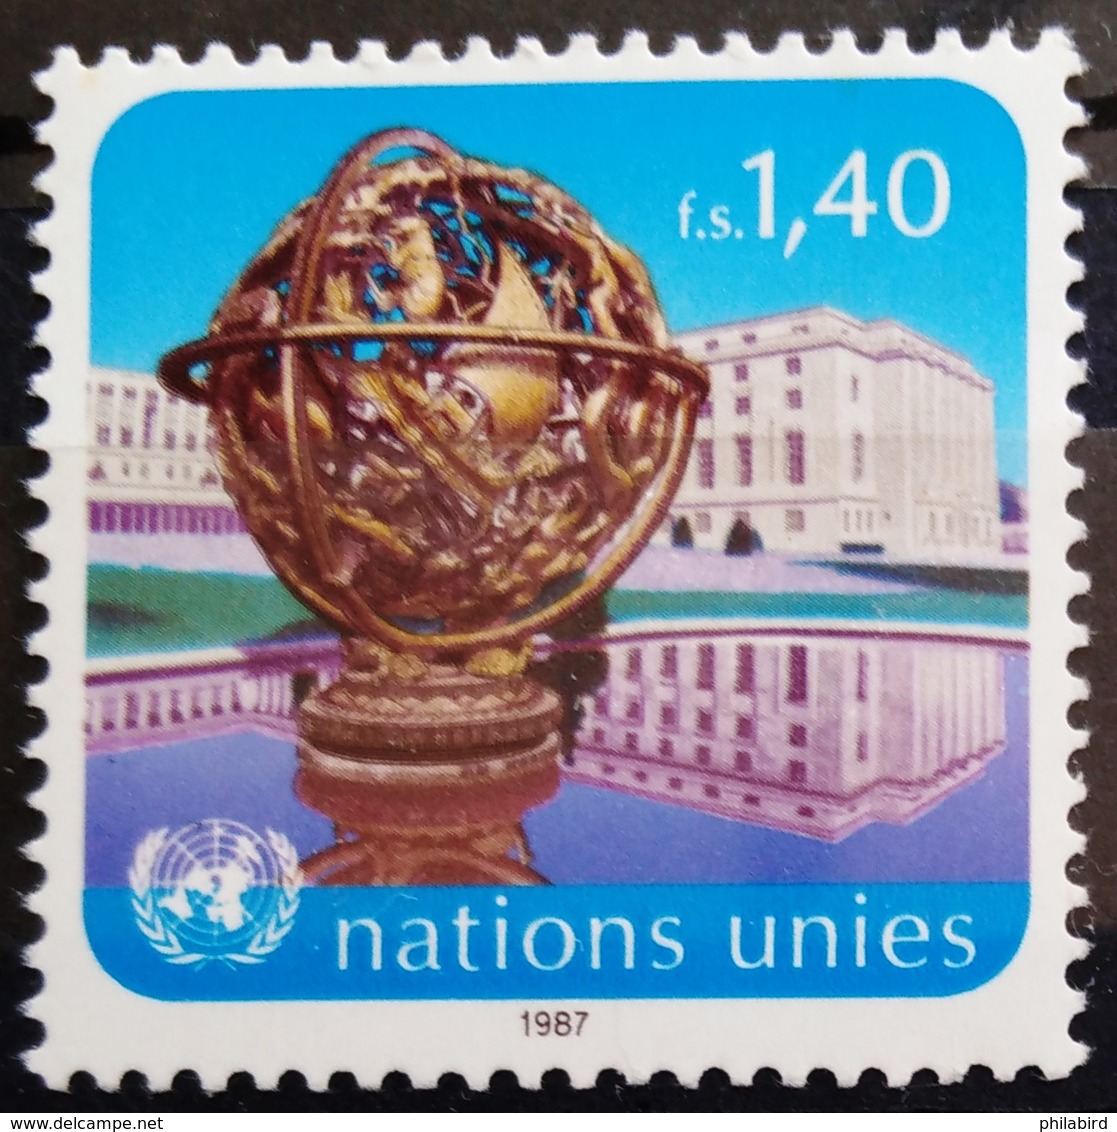 NATIONS-UNIS  GENEVE                  N° 153                      NEUF** - Ongebruikt